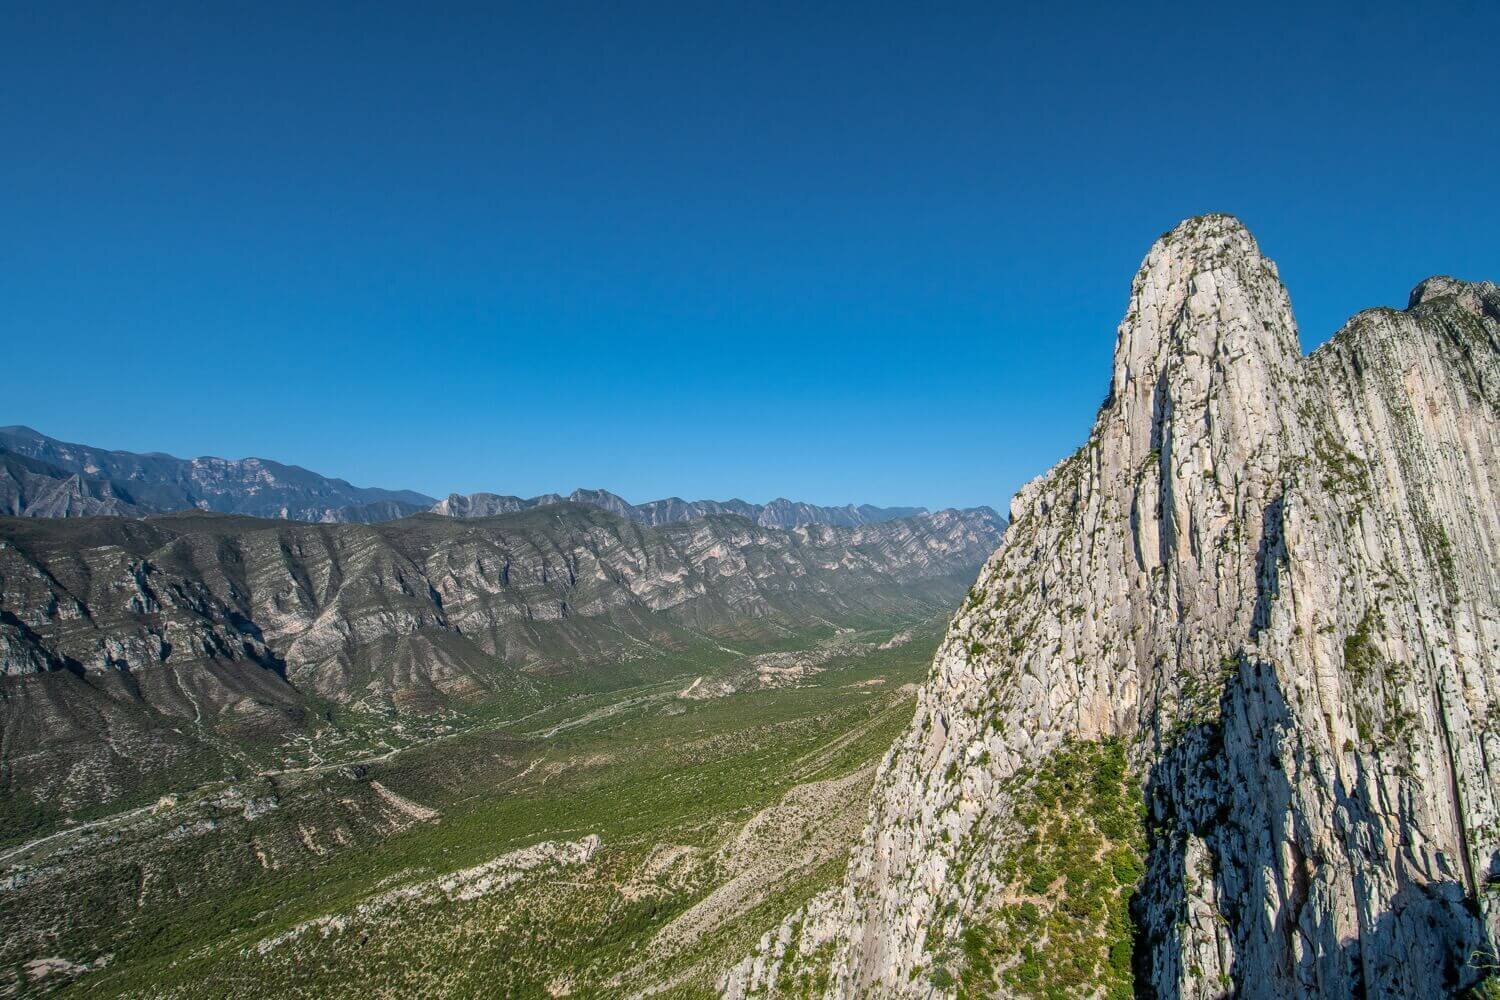 Vista panorámica de la Sierra Madre Oriental en La Huasteca. Parque ecológico La Huasteca regia. Naturaleza y aventura en Monterrey.